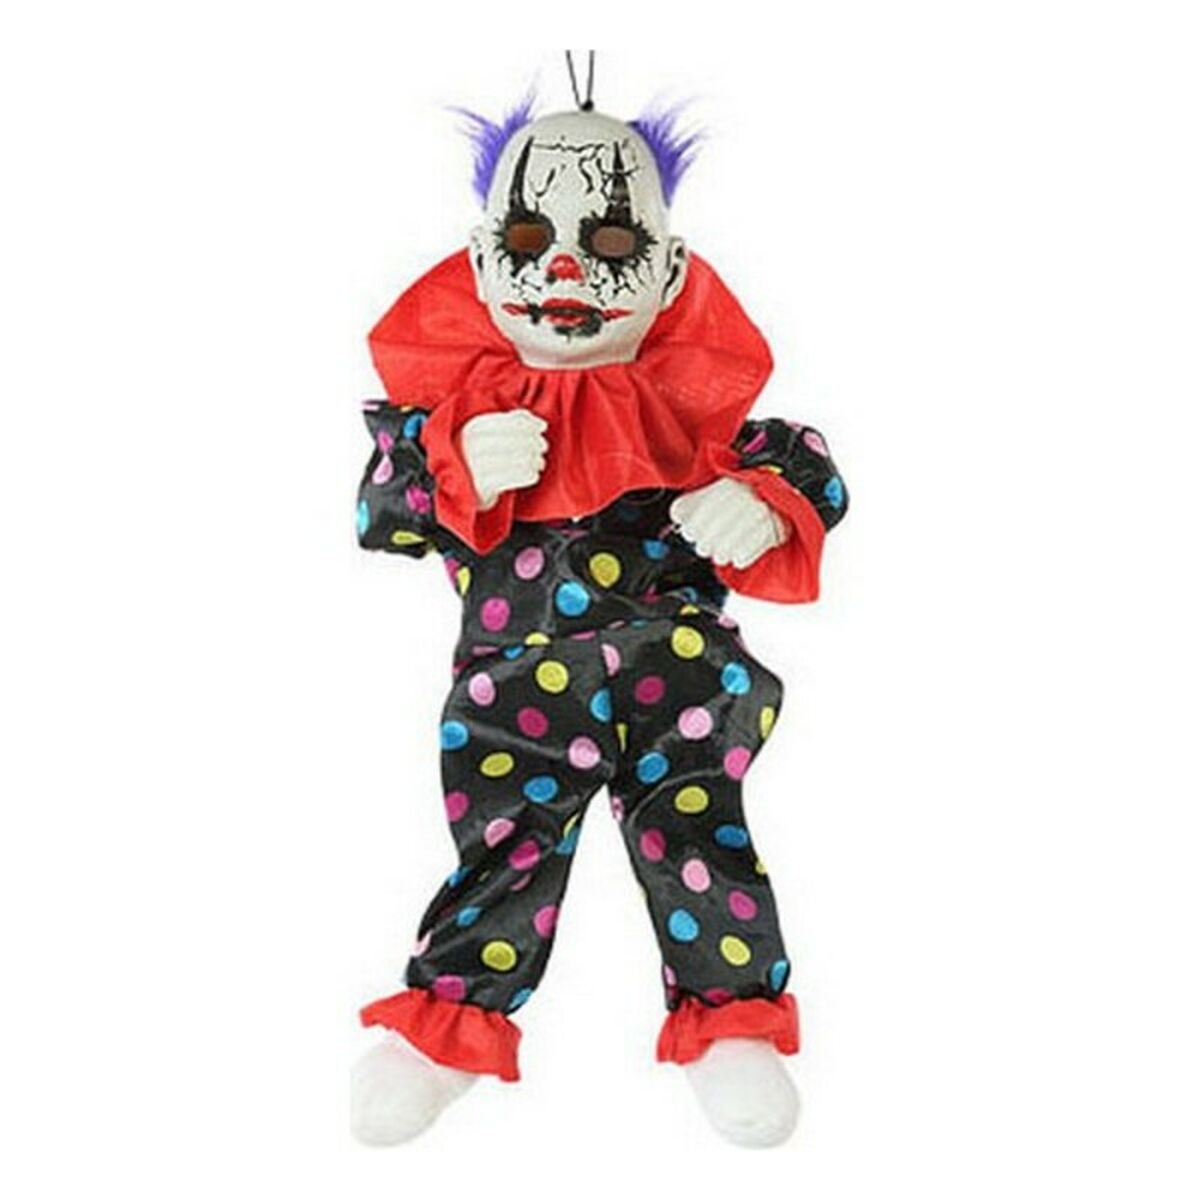 Hanging decoration Evil male clown (55 Cm)